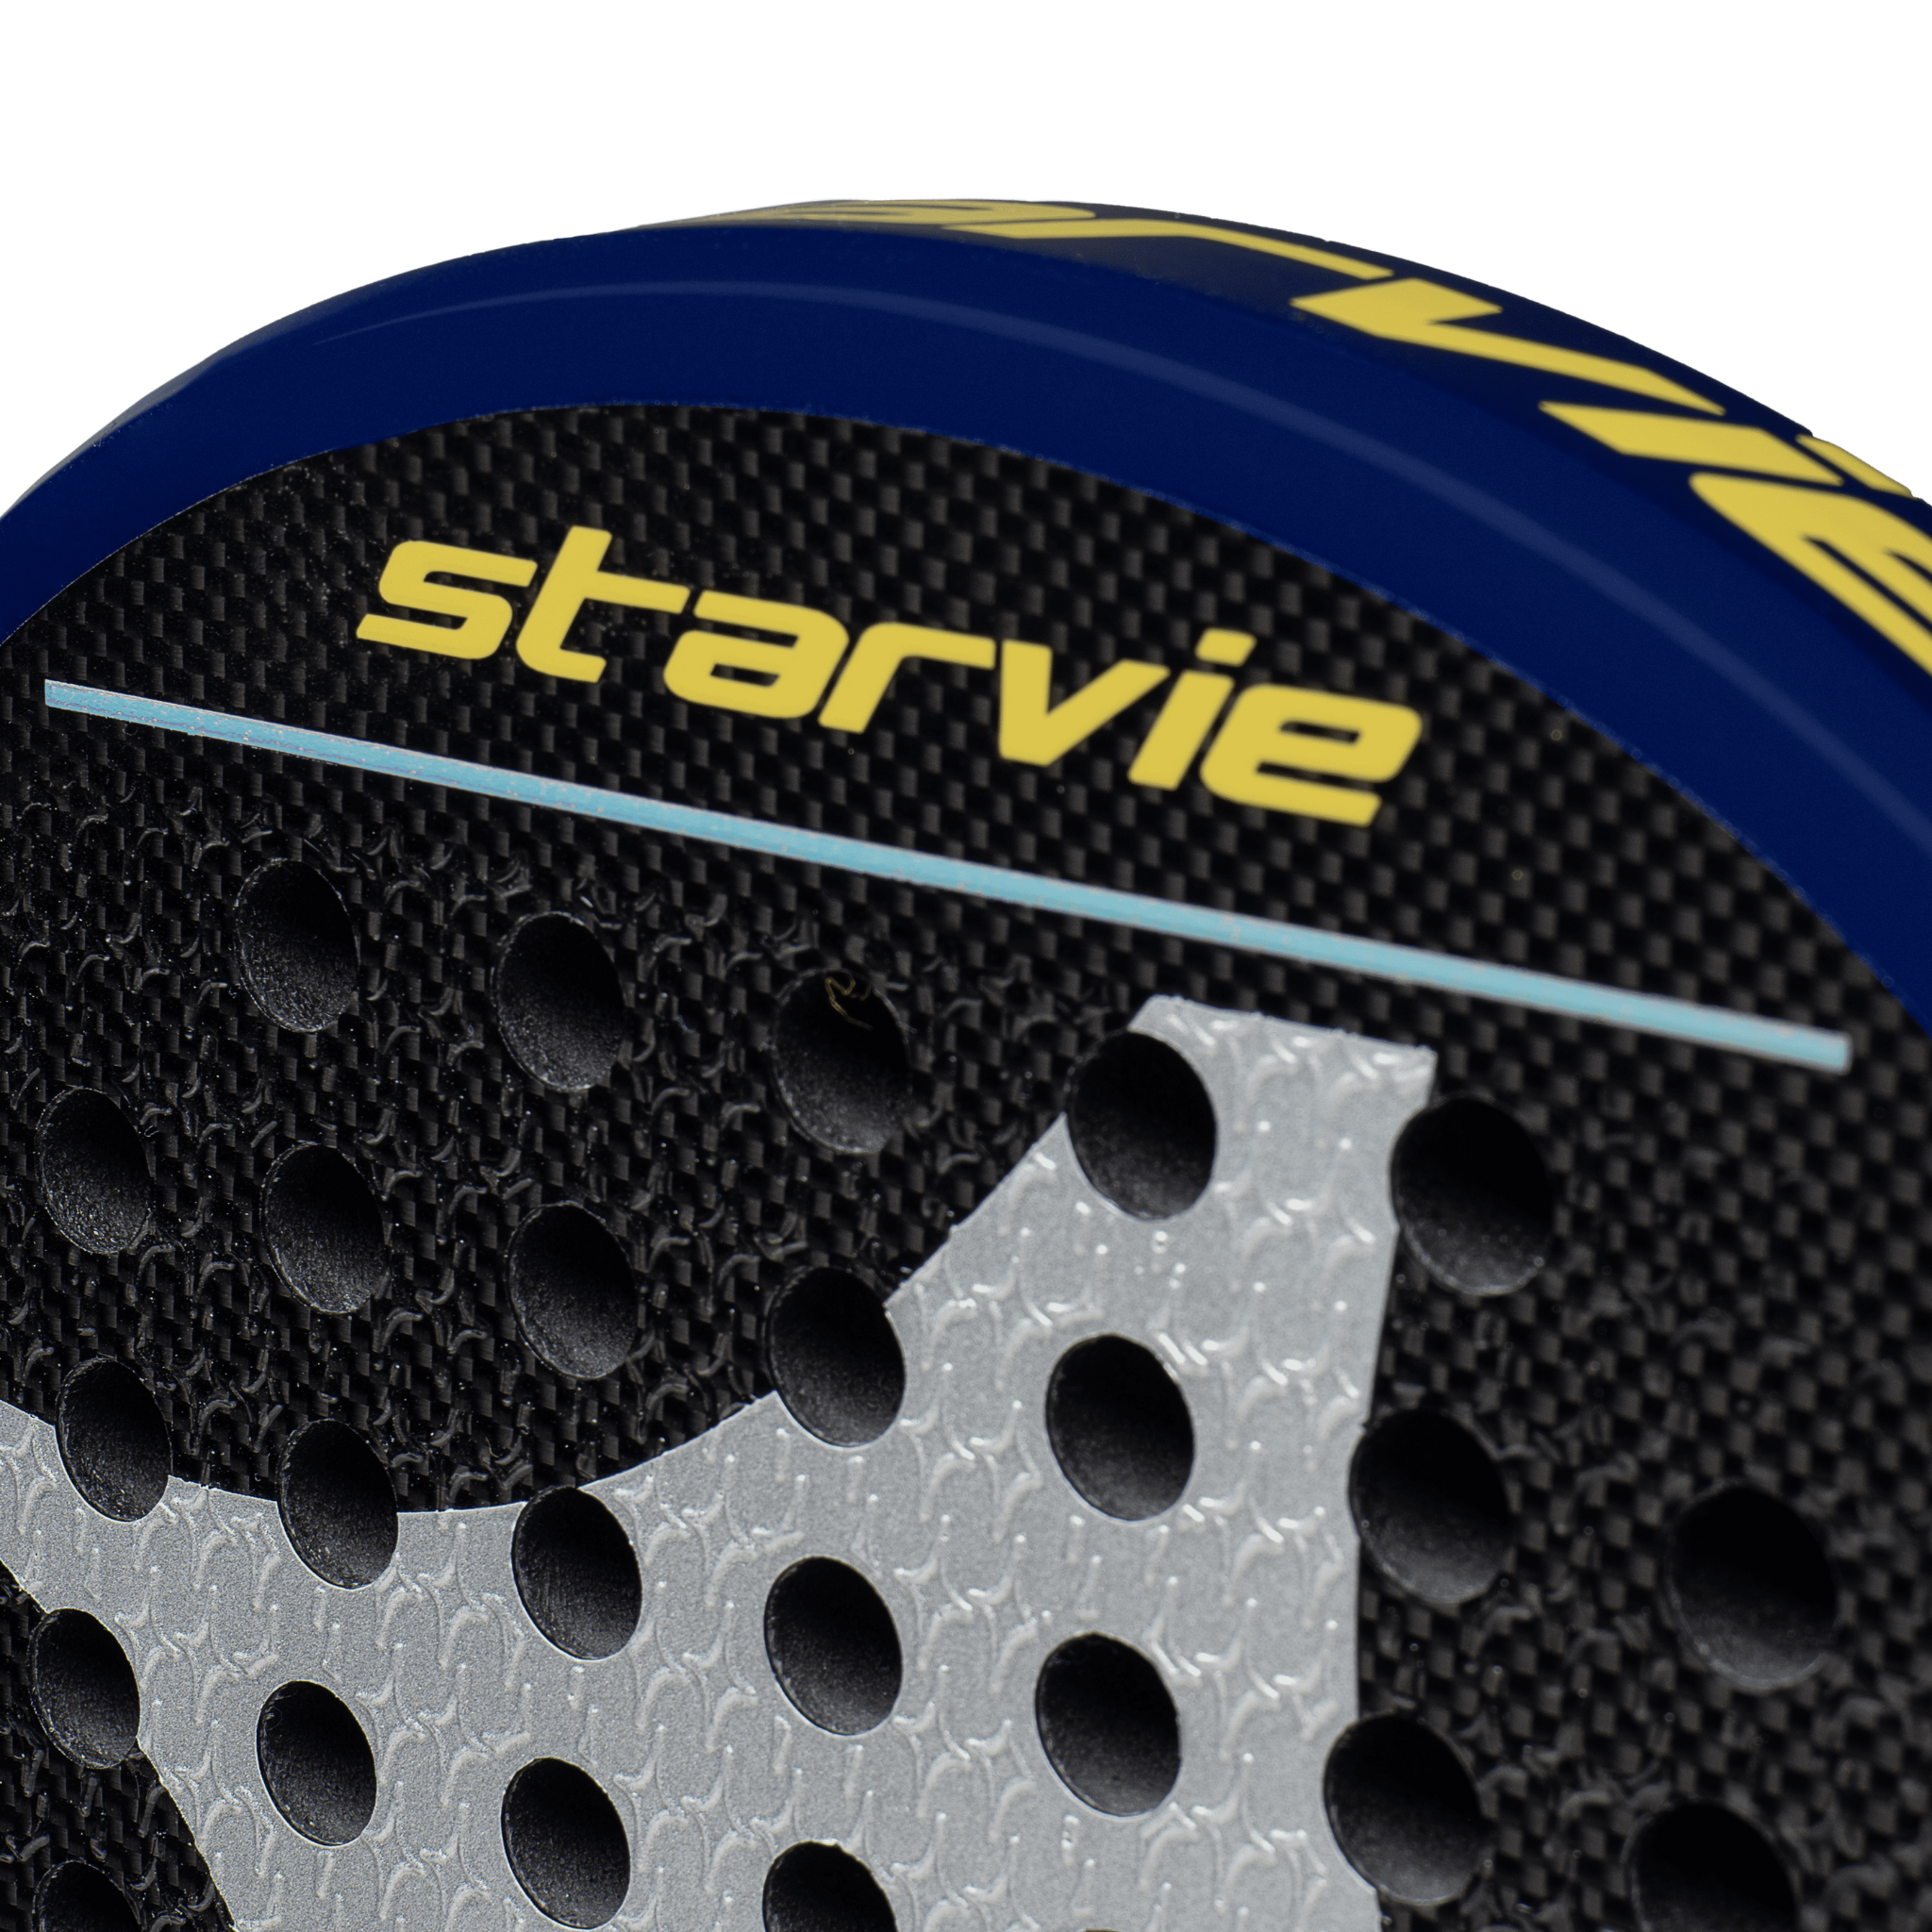 Discover the New Anti Shock Padel Grip Noene Inside StarVie